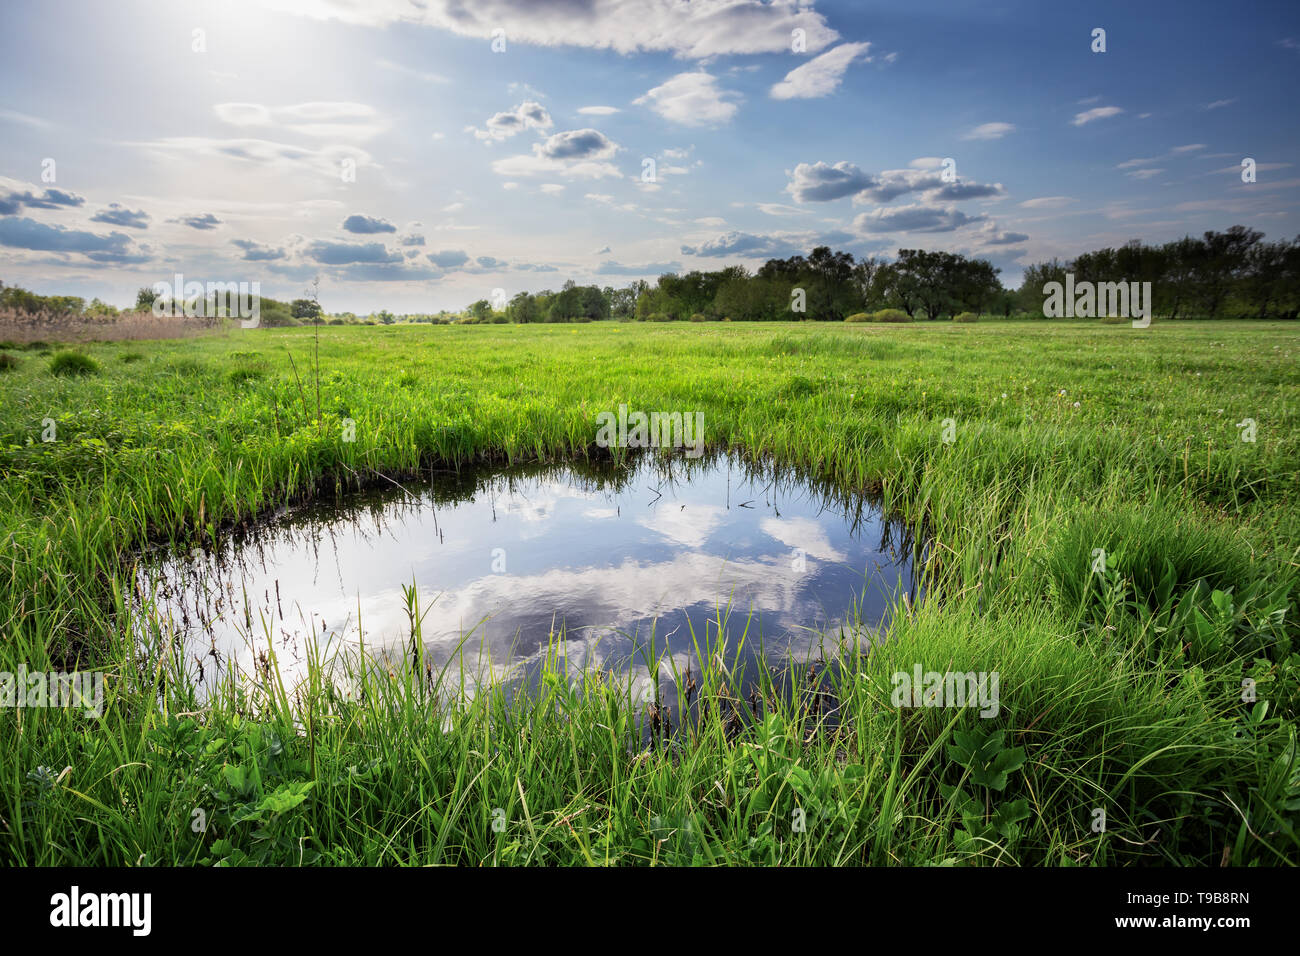 La réflexion des nuages et ciel bleu au petit lac parmi l'herbe verte Banque D'Images